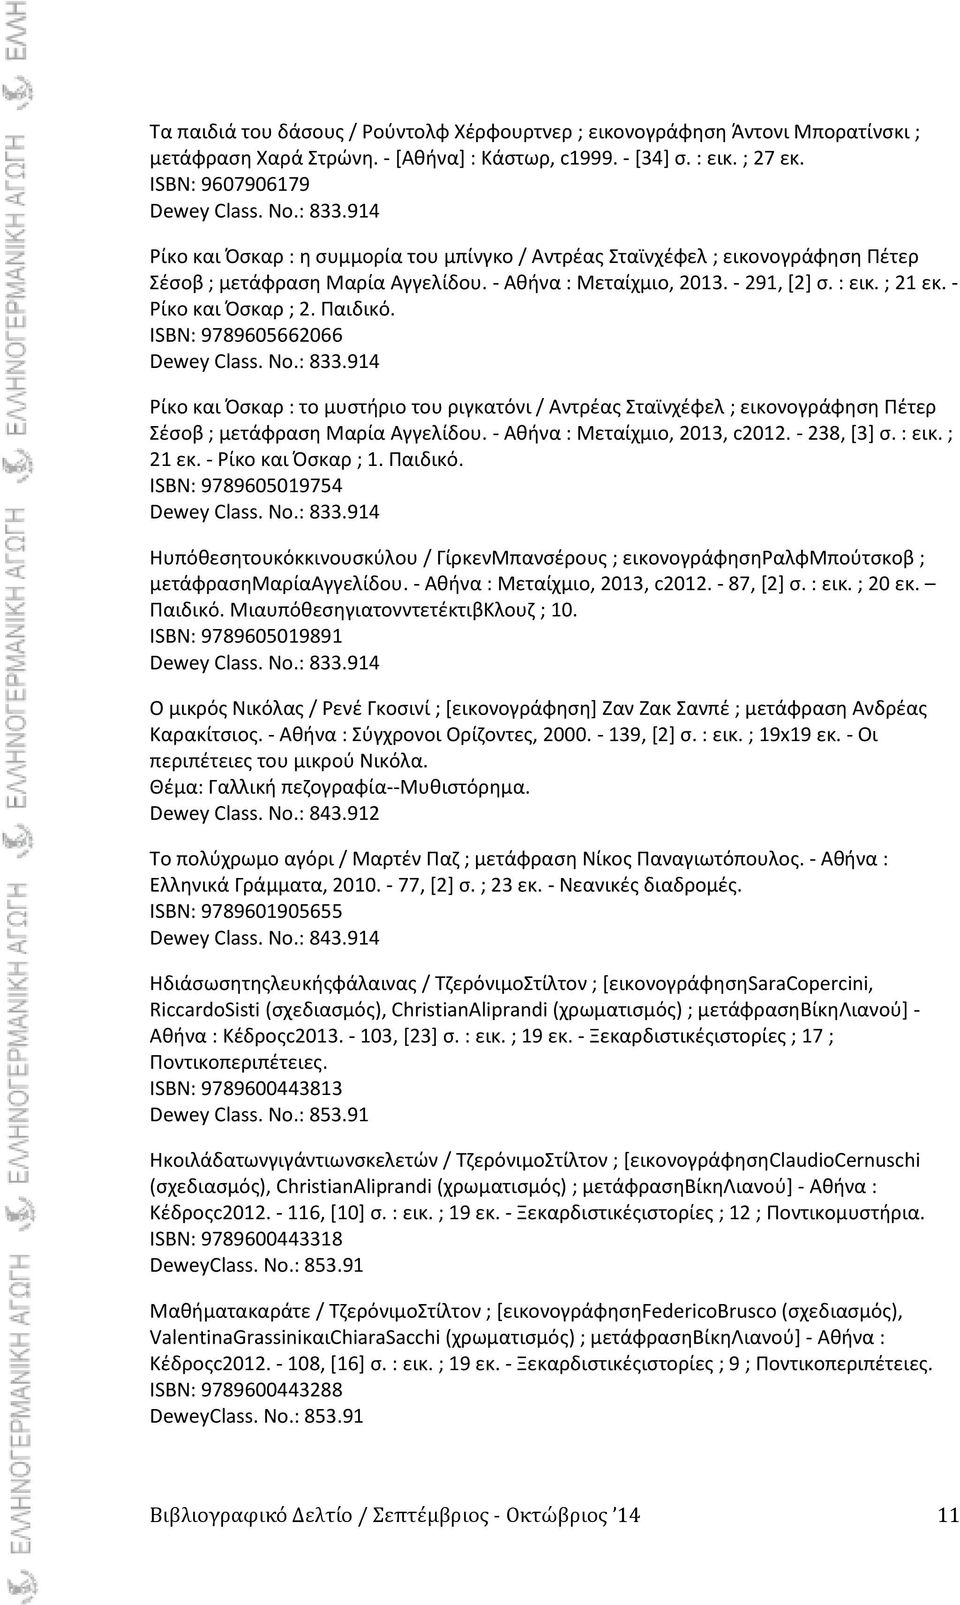 Ραιδικό. ISBN: 9789605662066 Dewey Class. No.: 833.914 ίκο και Πςκαρ : το μυςτιριο του ριγκατόνι / Αντρζασ Σταϊνχζφελ ; εικονογράφθςθ Ρζτερ Σζςοβ ; μετάφραςθ Μαρία Αγγελίδου.